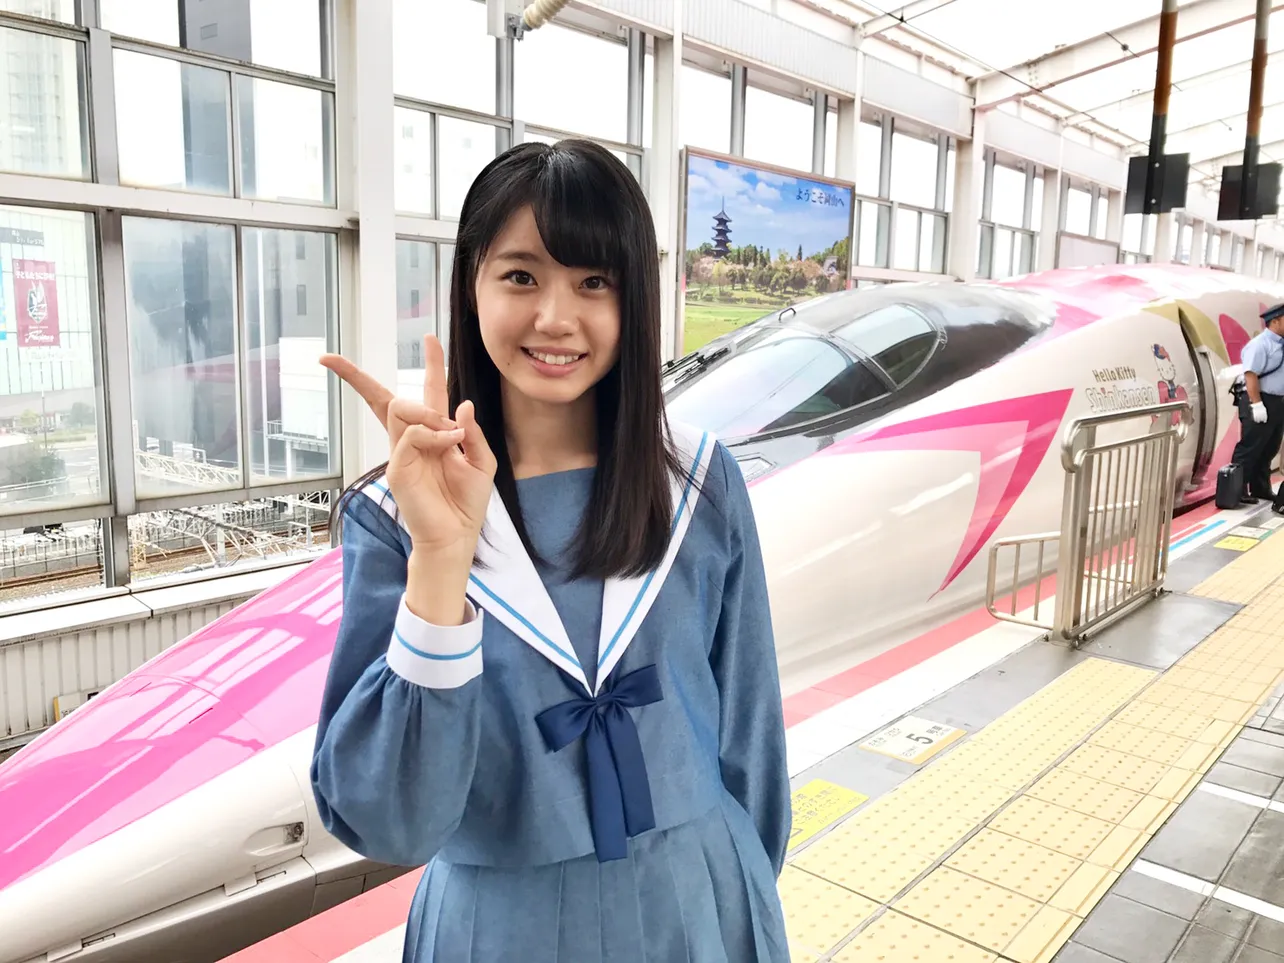 広島発「ハローキティ新幹線」に乗り込んだ、STU48の“新幹線女子”こと瀧野由美子